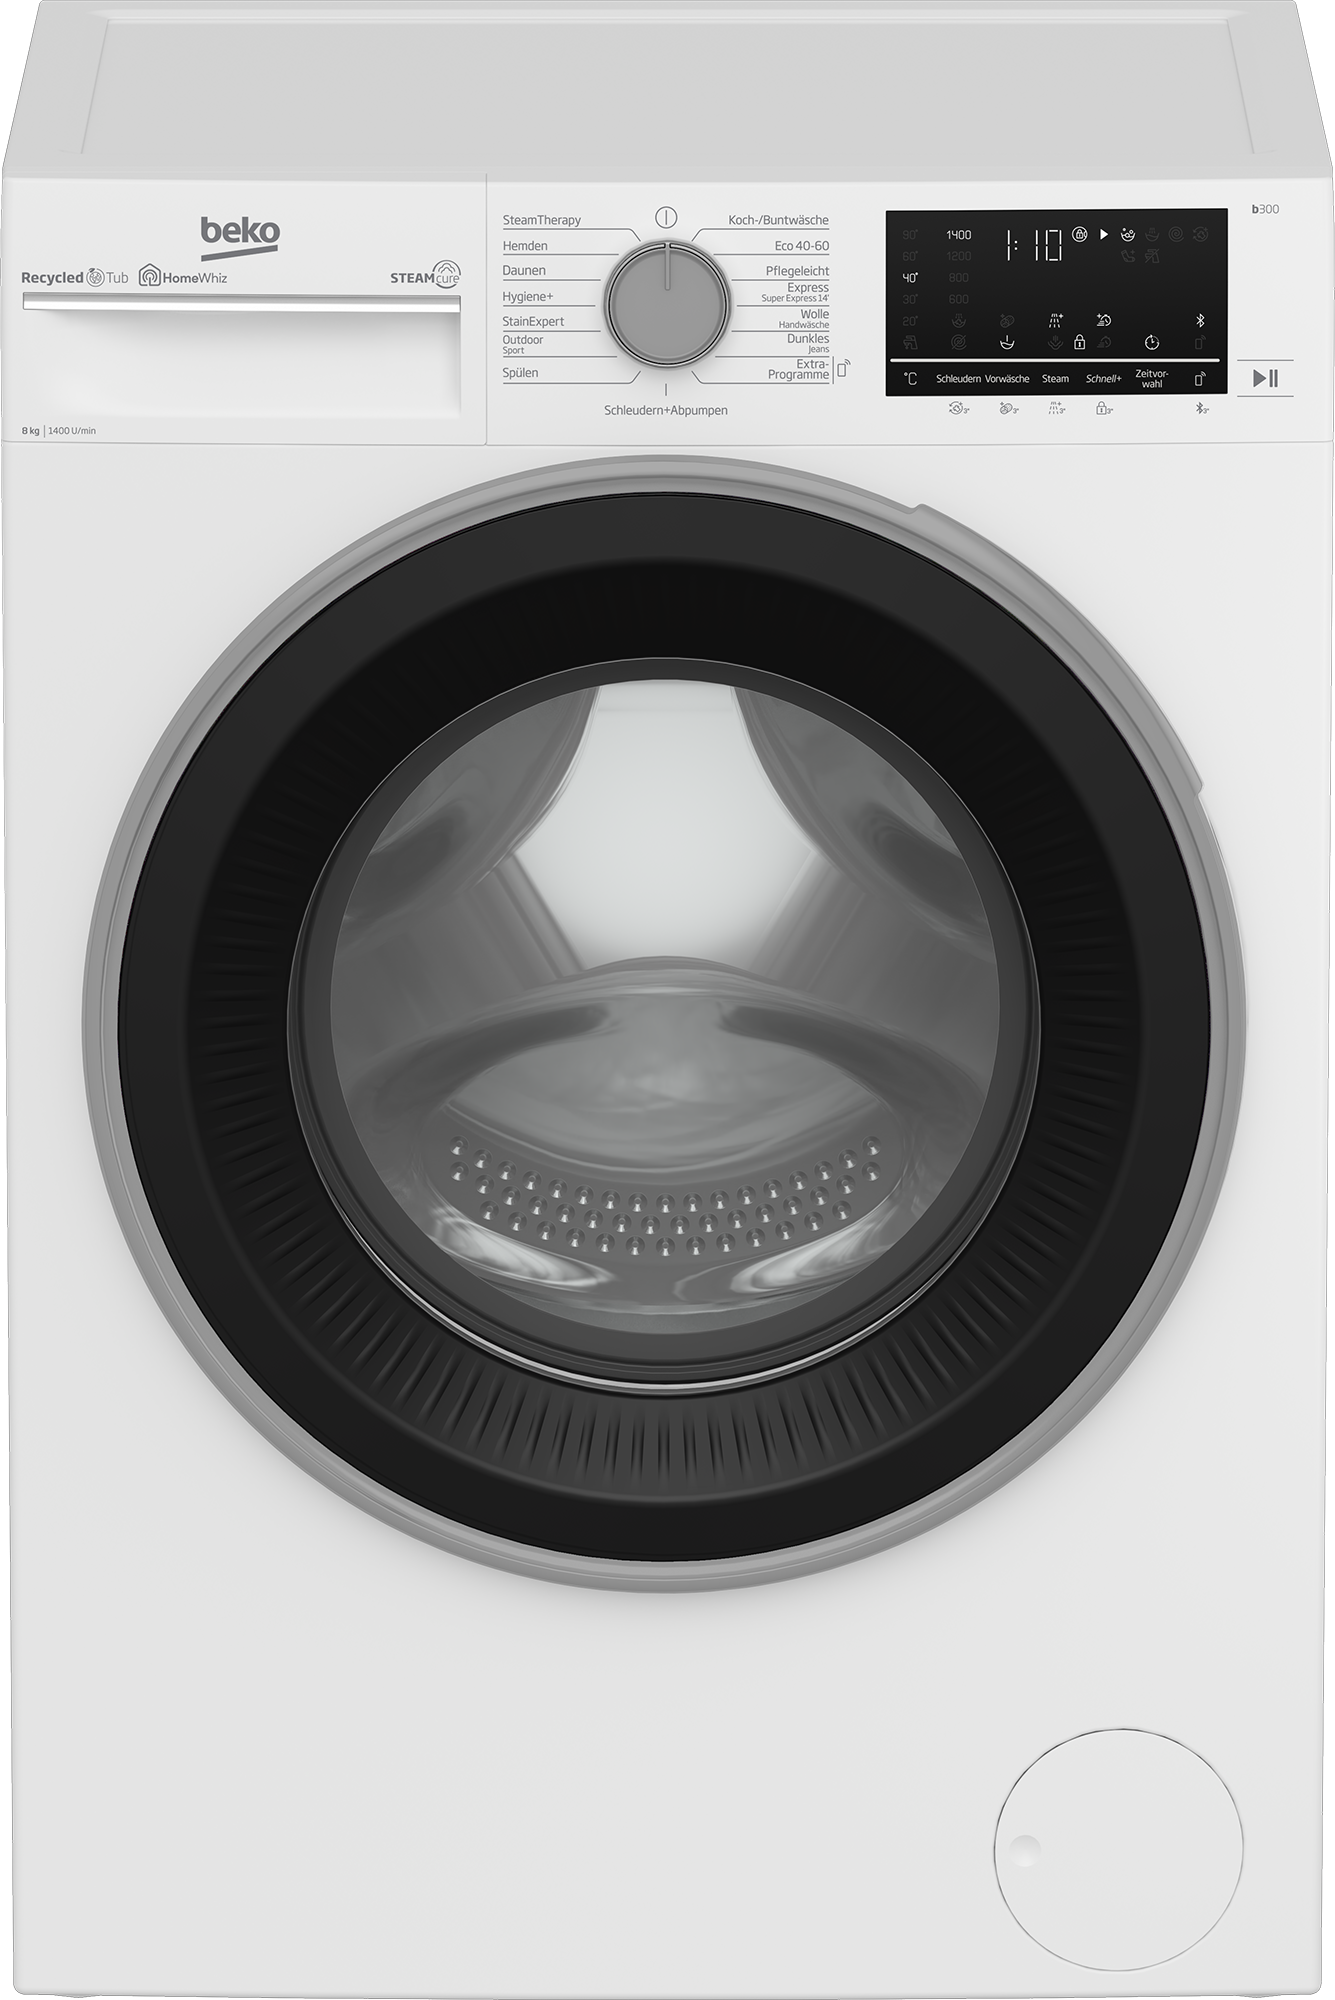 BEKO Waschmaschine, b300, B3WFU58415W1, Garantie 1400 XXL Jahren - 3 8 kg, U/min, SteamCure allergenfrei 99% mit